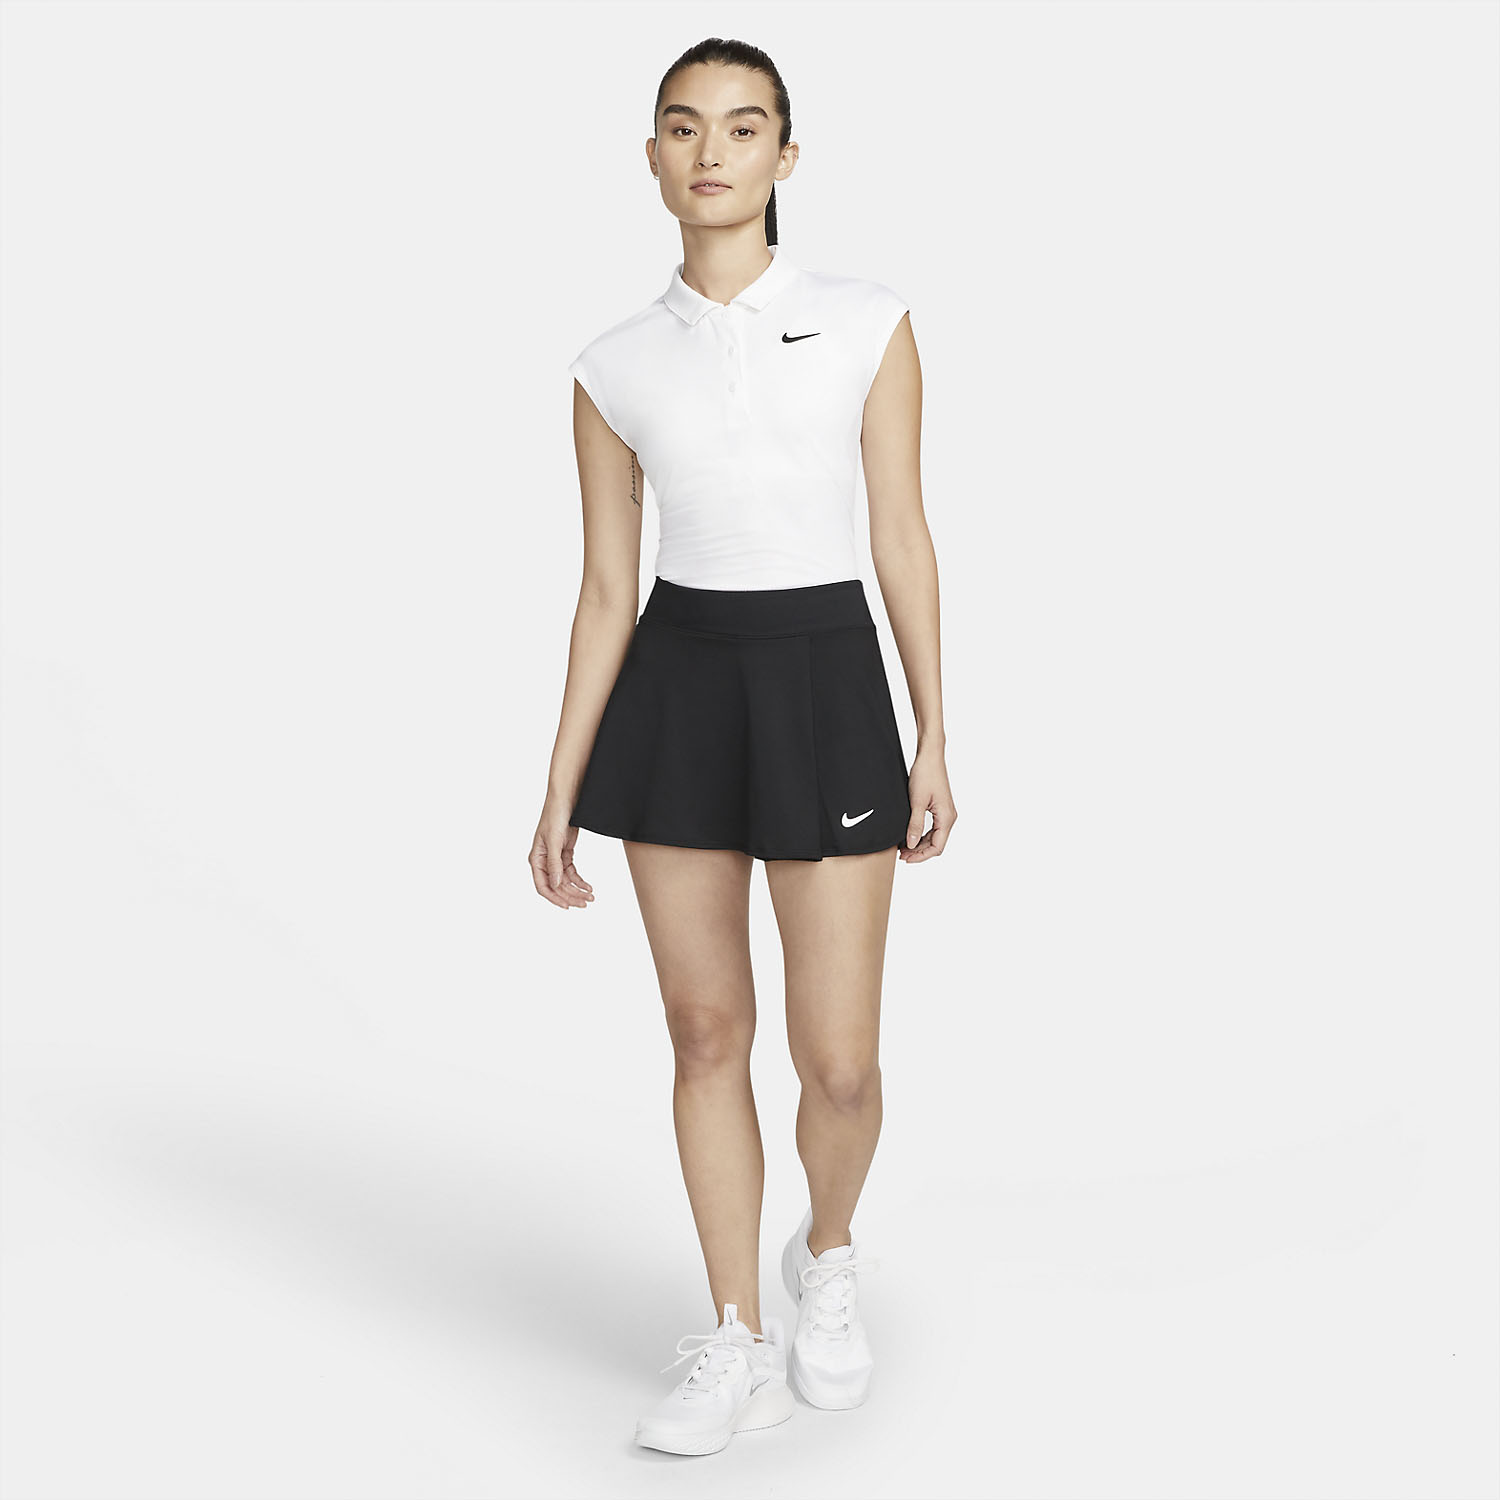 Nike Flouncy Skirt - Black/White